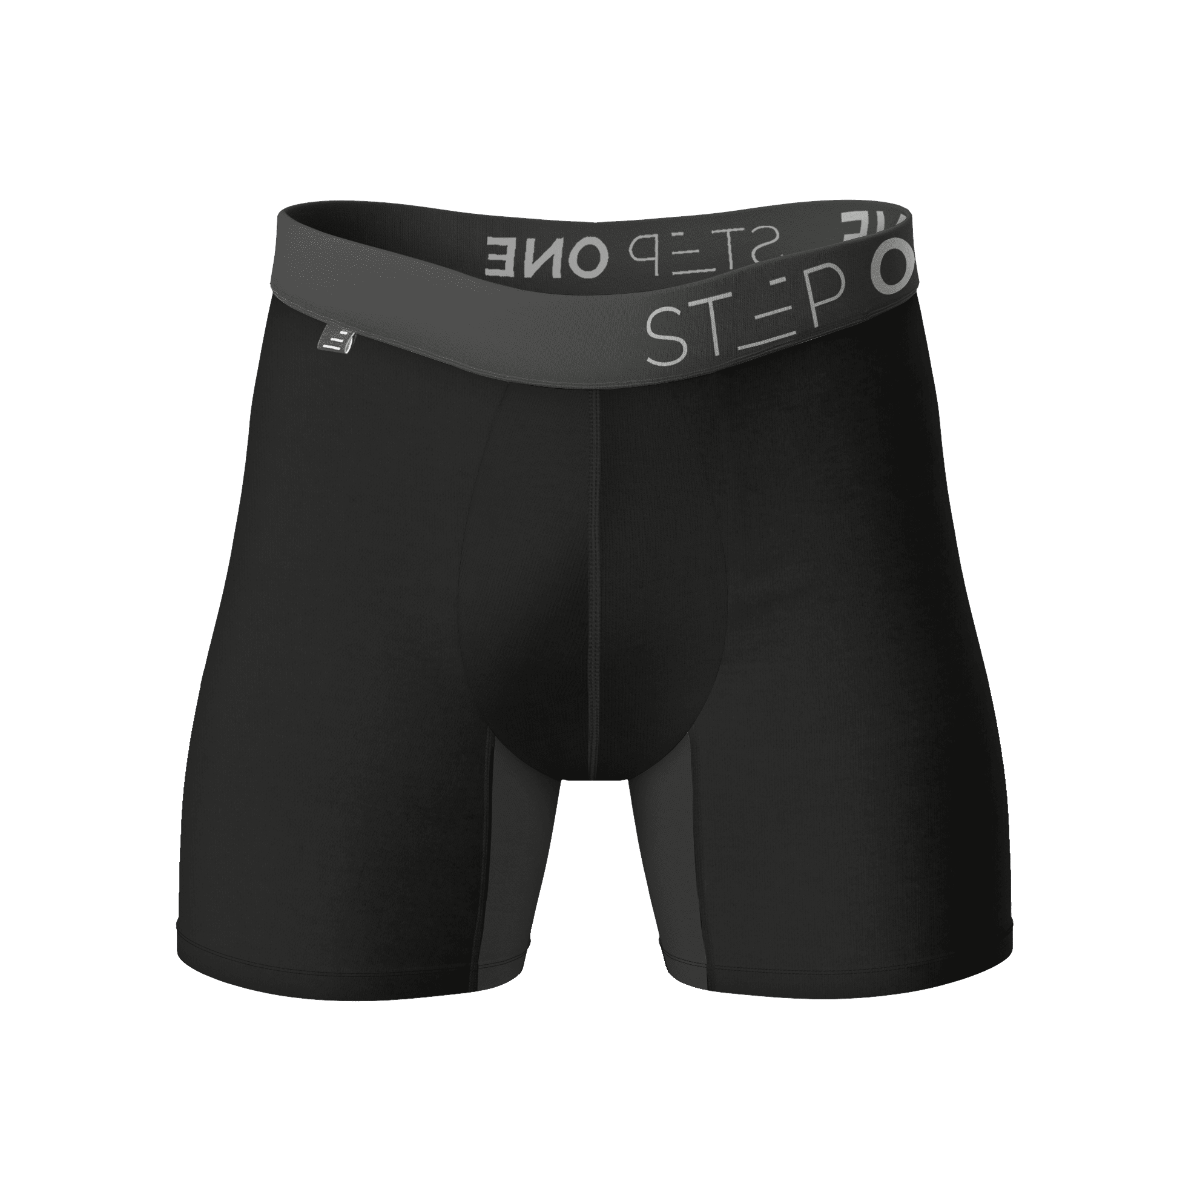 Buy Men's Underwear Online in Australia